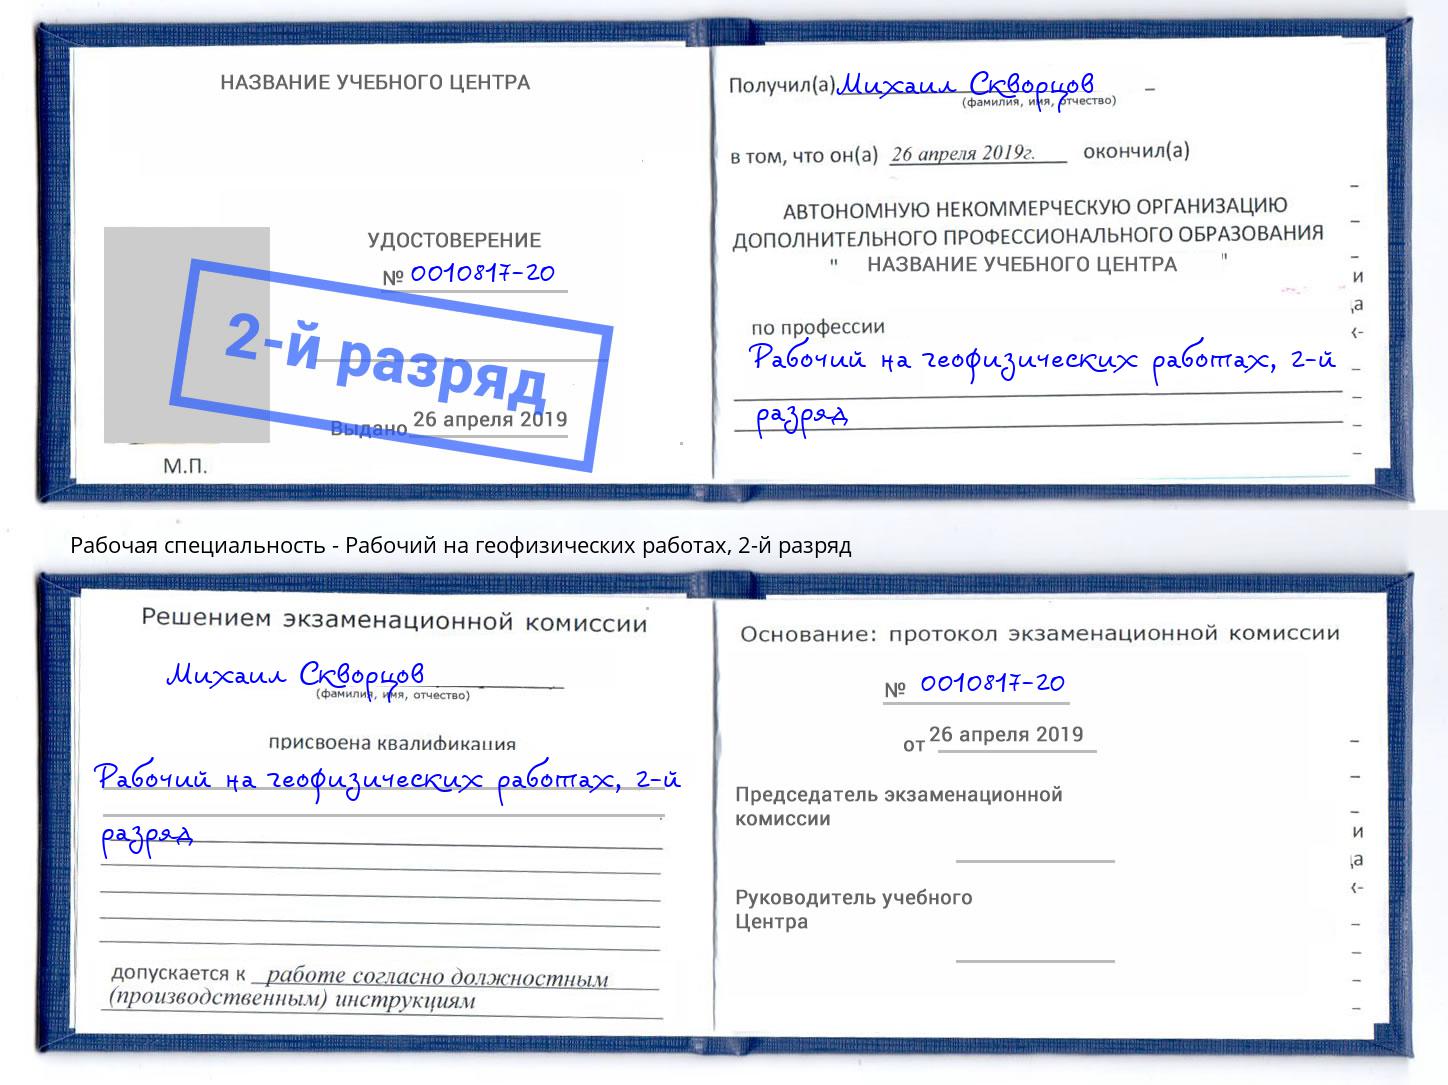 корочка 2-й разряд Рабочий на геофизических работах Ханты-Мансийск